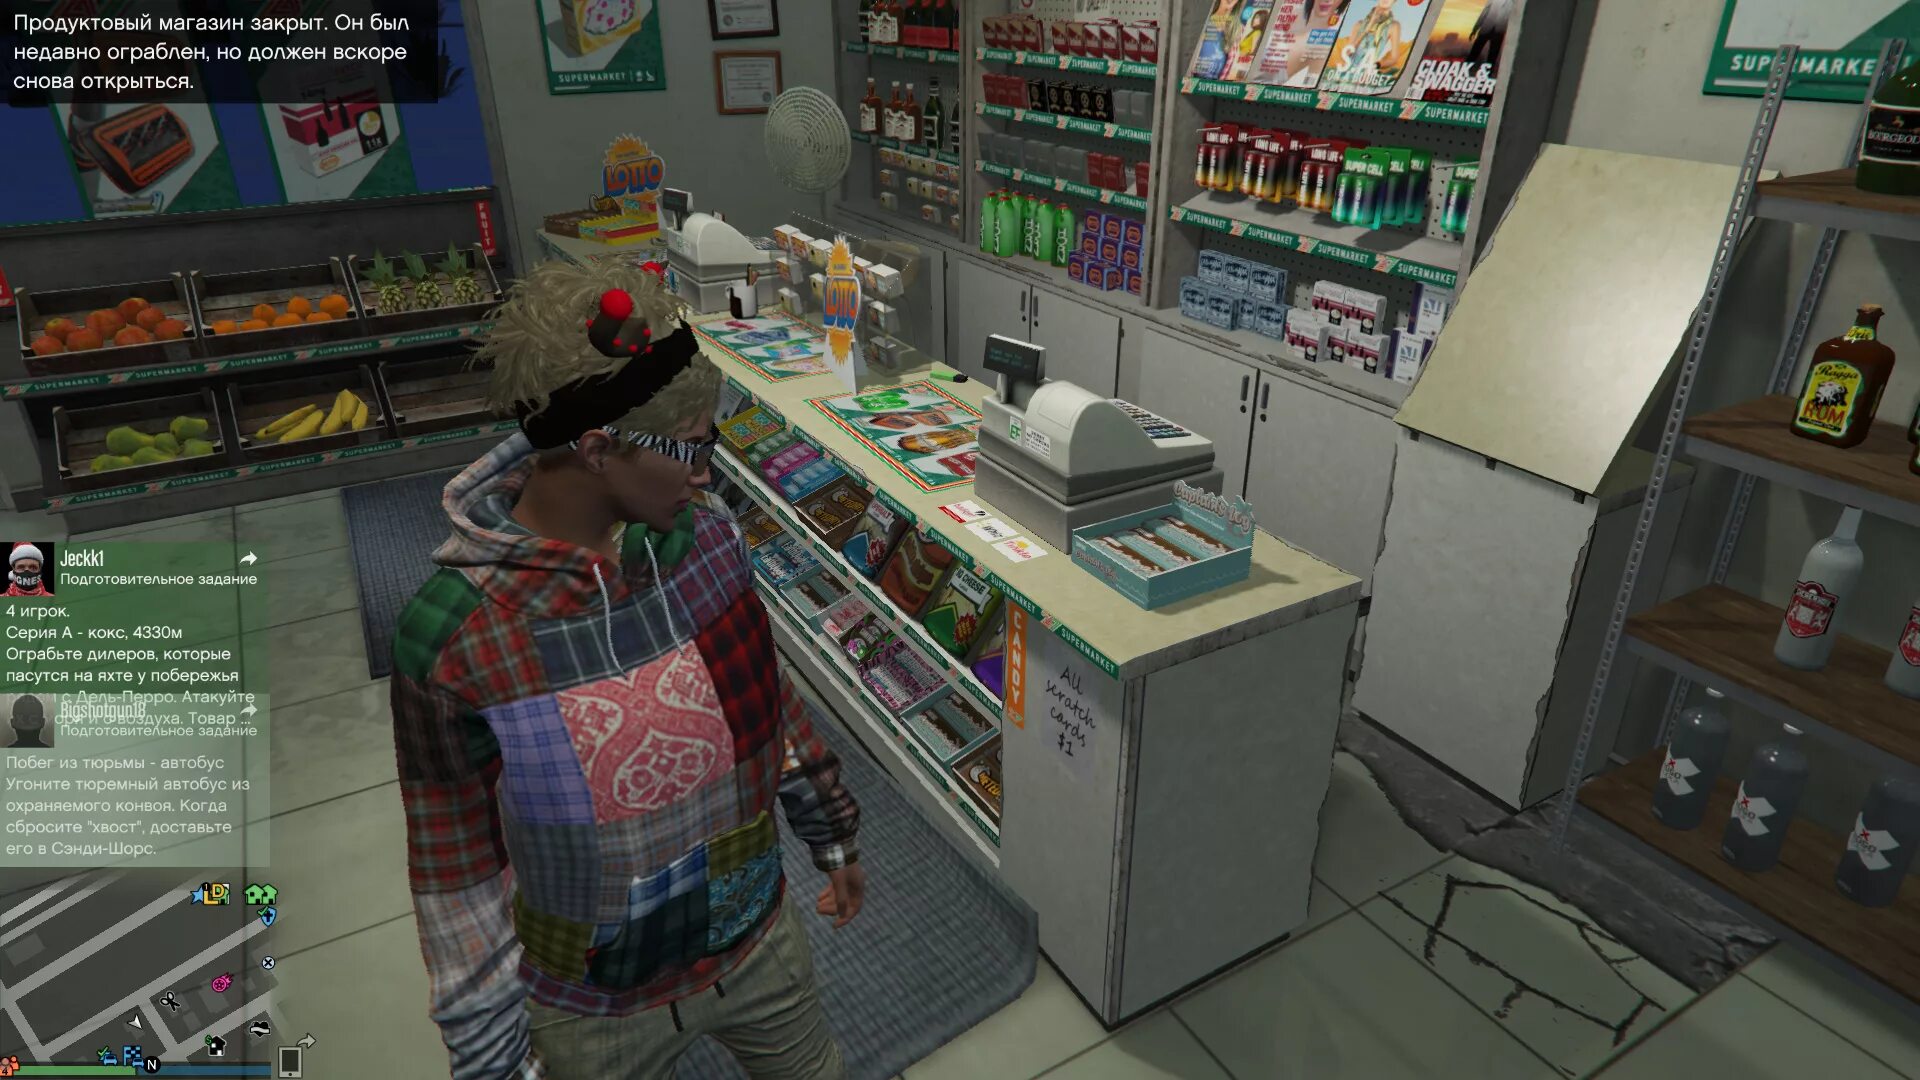 Магазины которые можно ограбить. GTA 5 магазины для ограбления. Ограбления люберельный магазин в ГТА 5. Ограбление магазина. Игра про ограбление магазина.